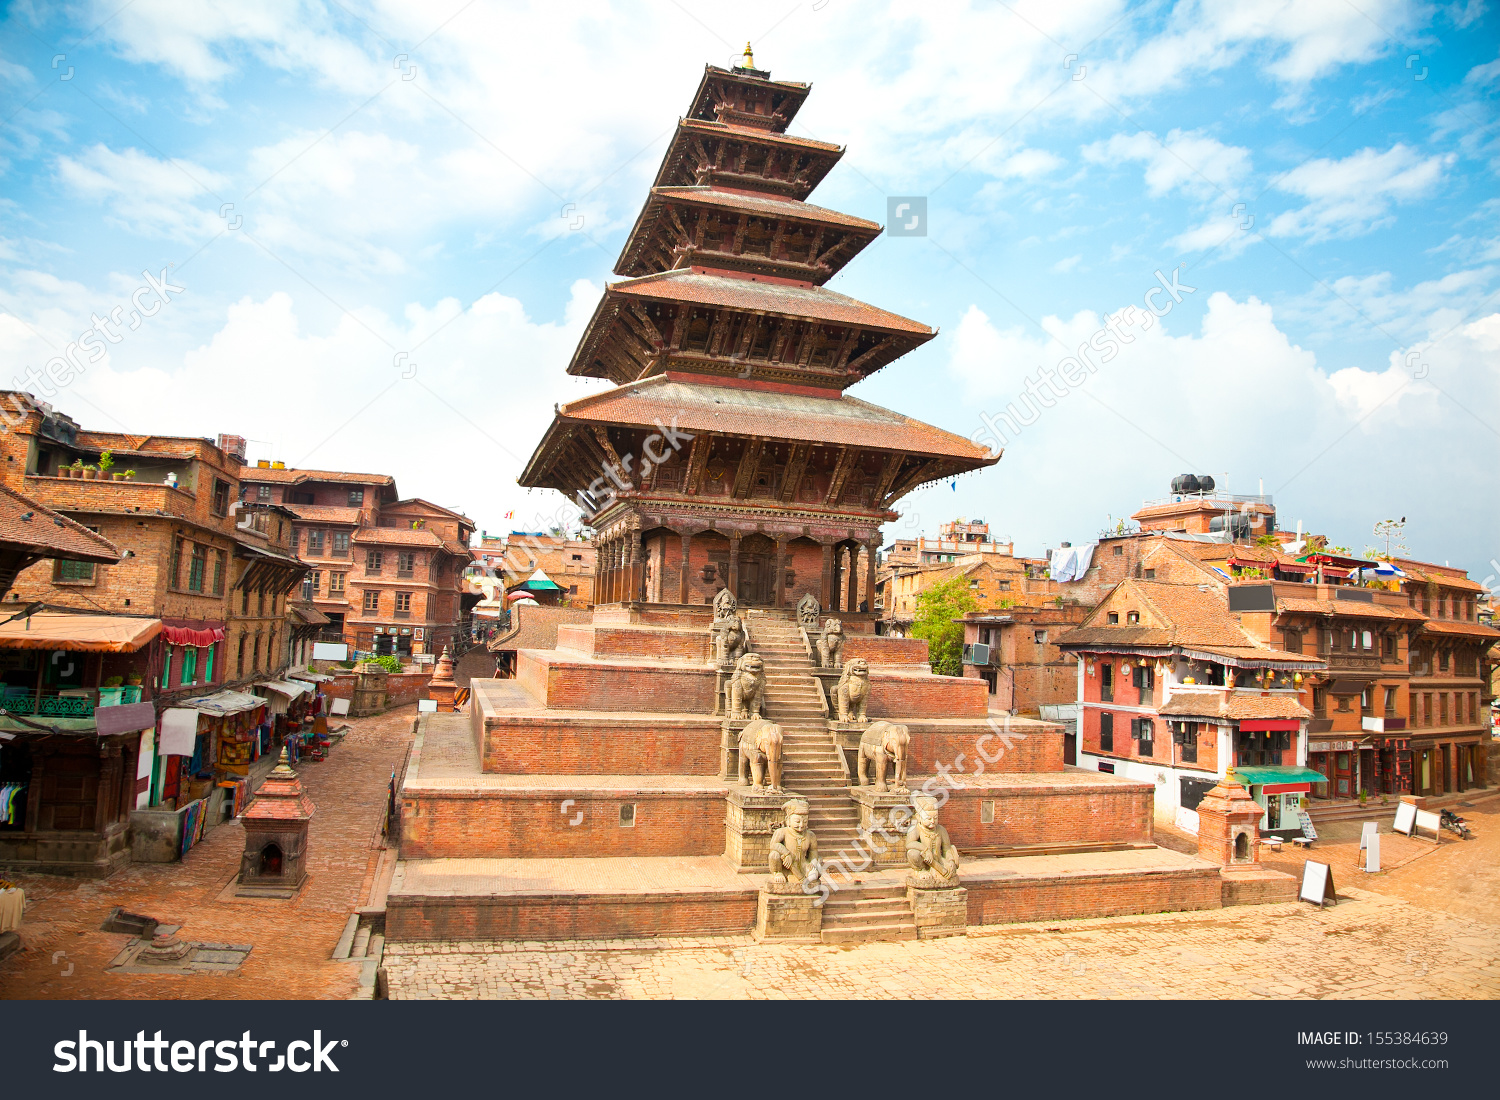 Nepalese Pagoda #2